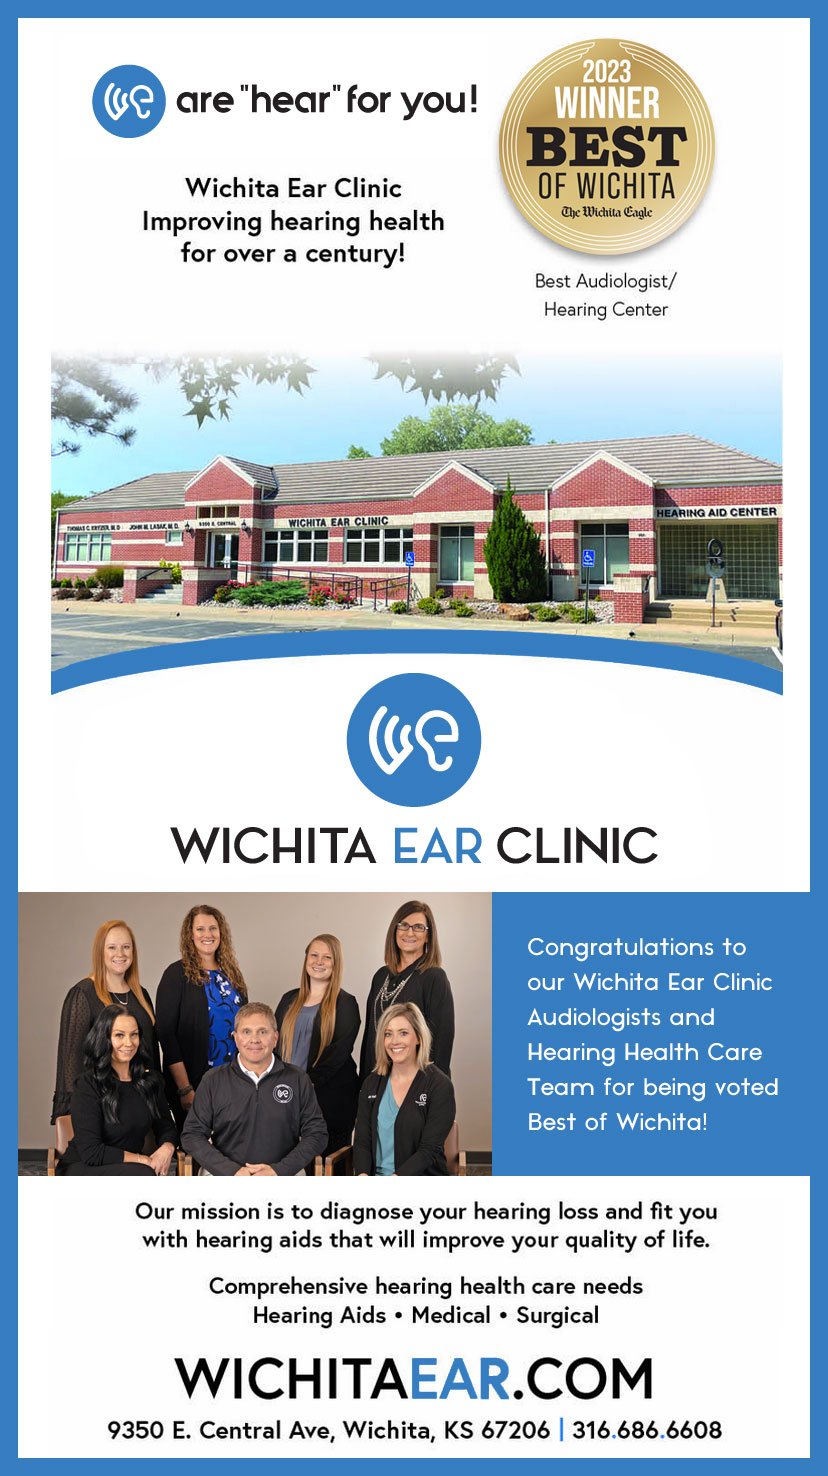 Wichita Ear Clinic 2023 Winner Best of Wichita